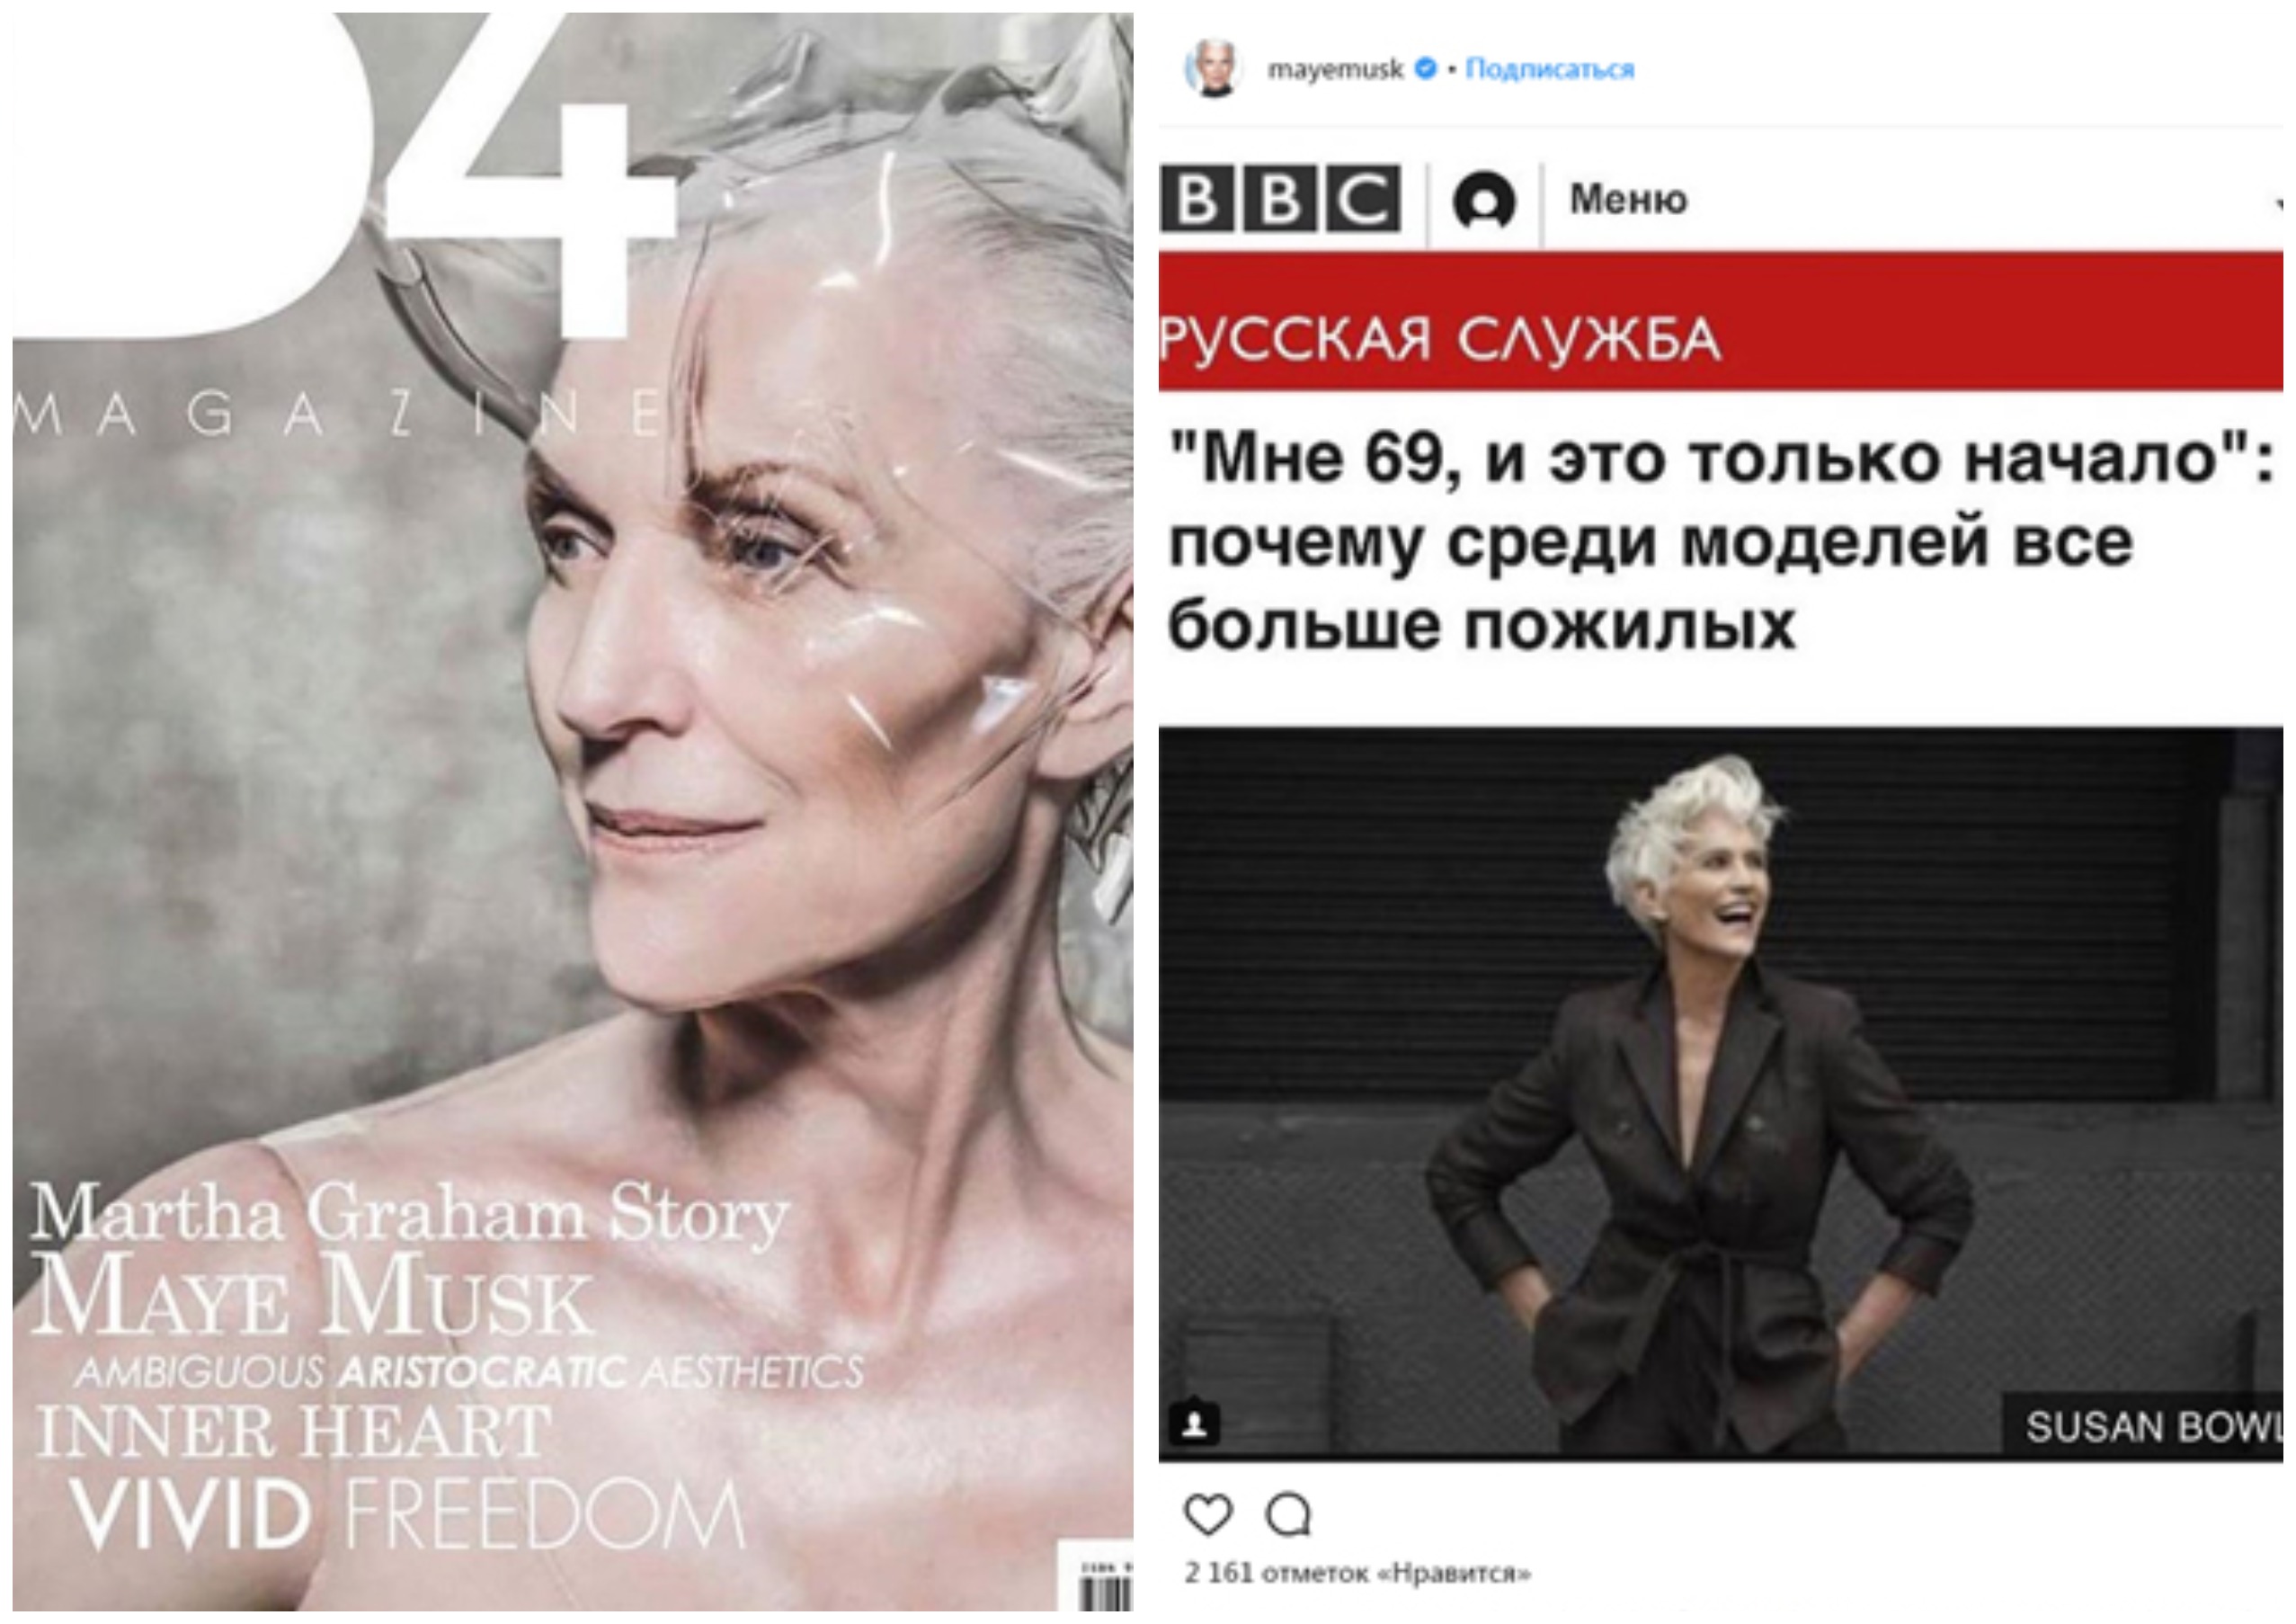 Muqovasida Mey tasvirlangan d4 Magazine jurnali va BBC rus xizmatining model haqidagi maqolasi